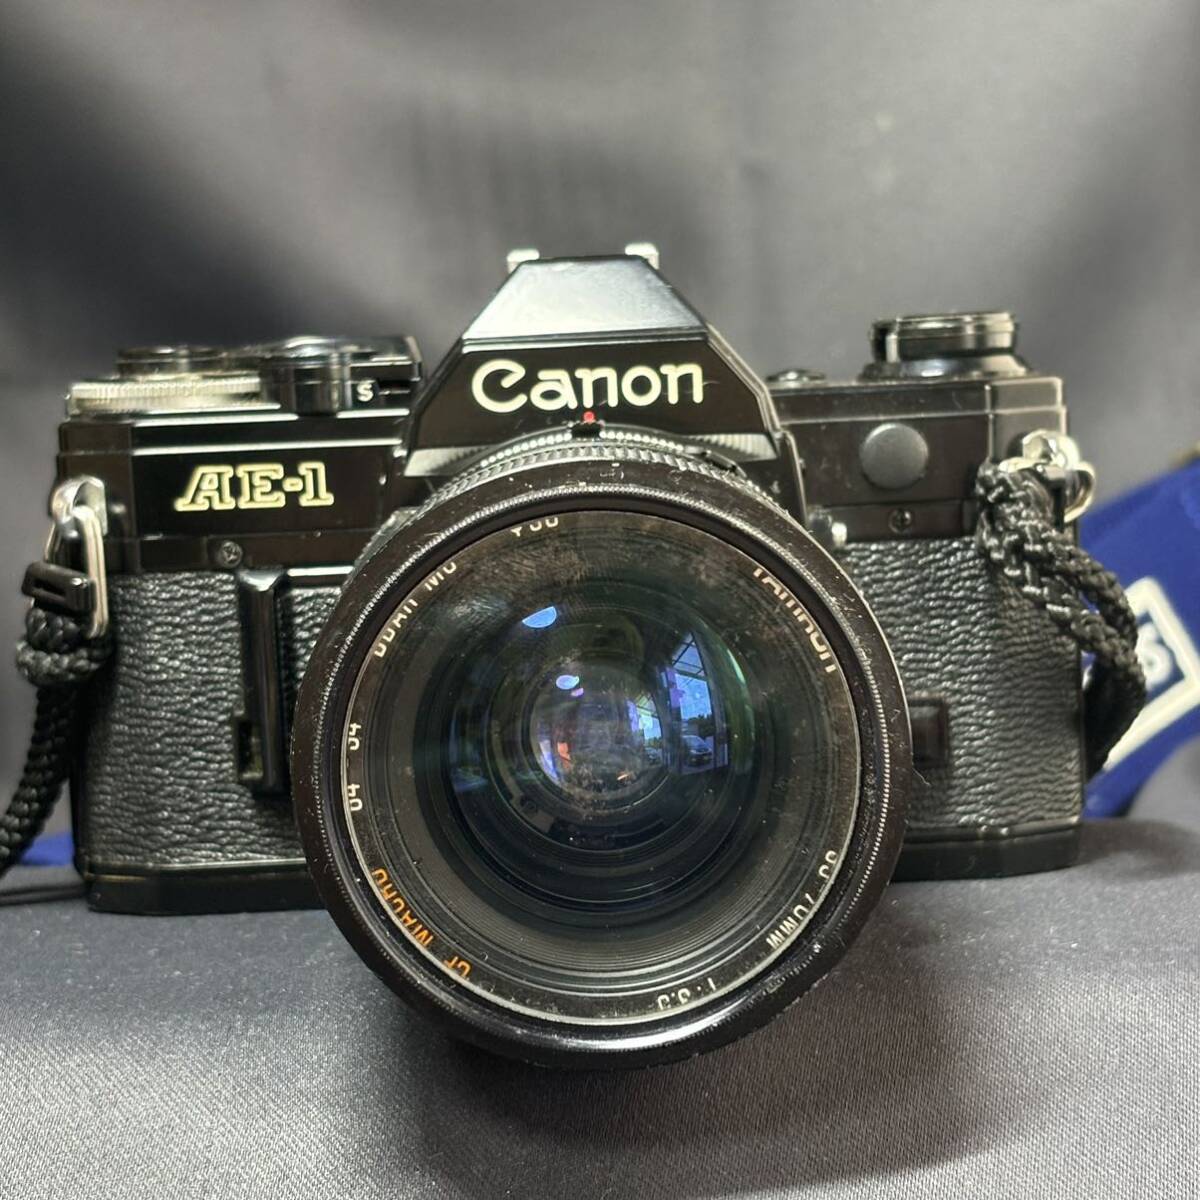 Canon キャノン AE-1 一眼レフ フィルムカメラ/カメラレンズ TAMRON 35-70mm 1:3.5 ボディ ブラック 動作未確認の画像2